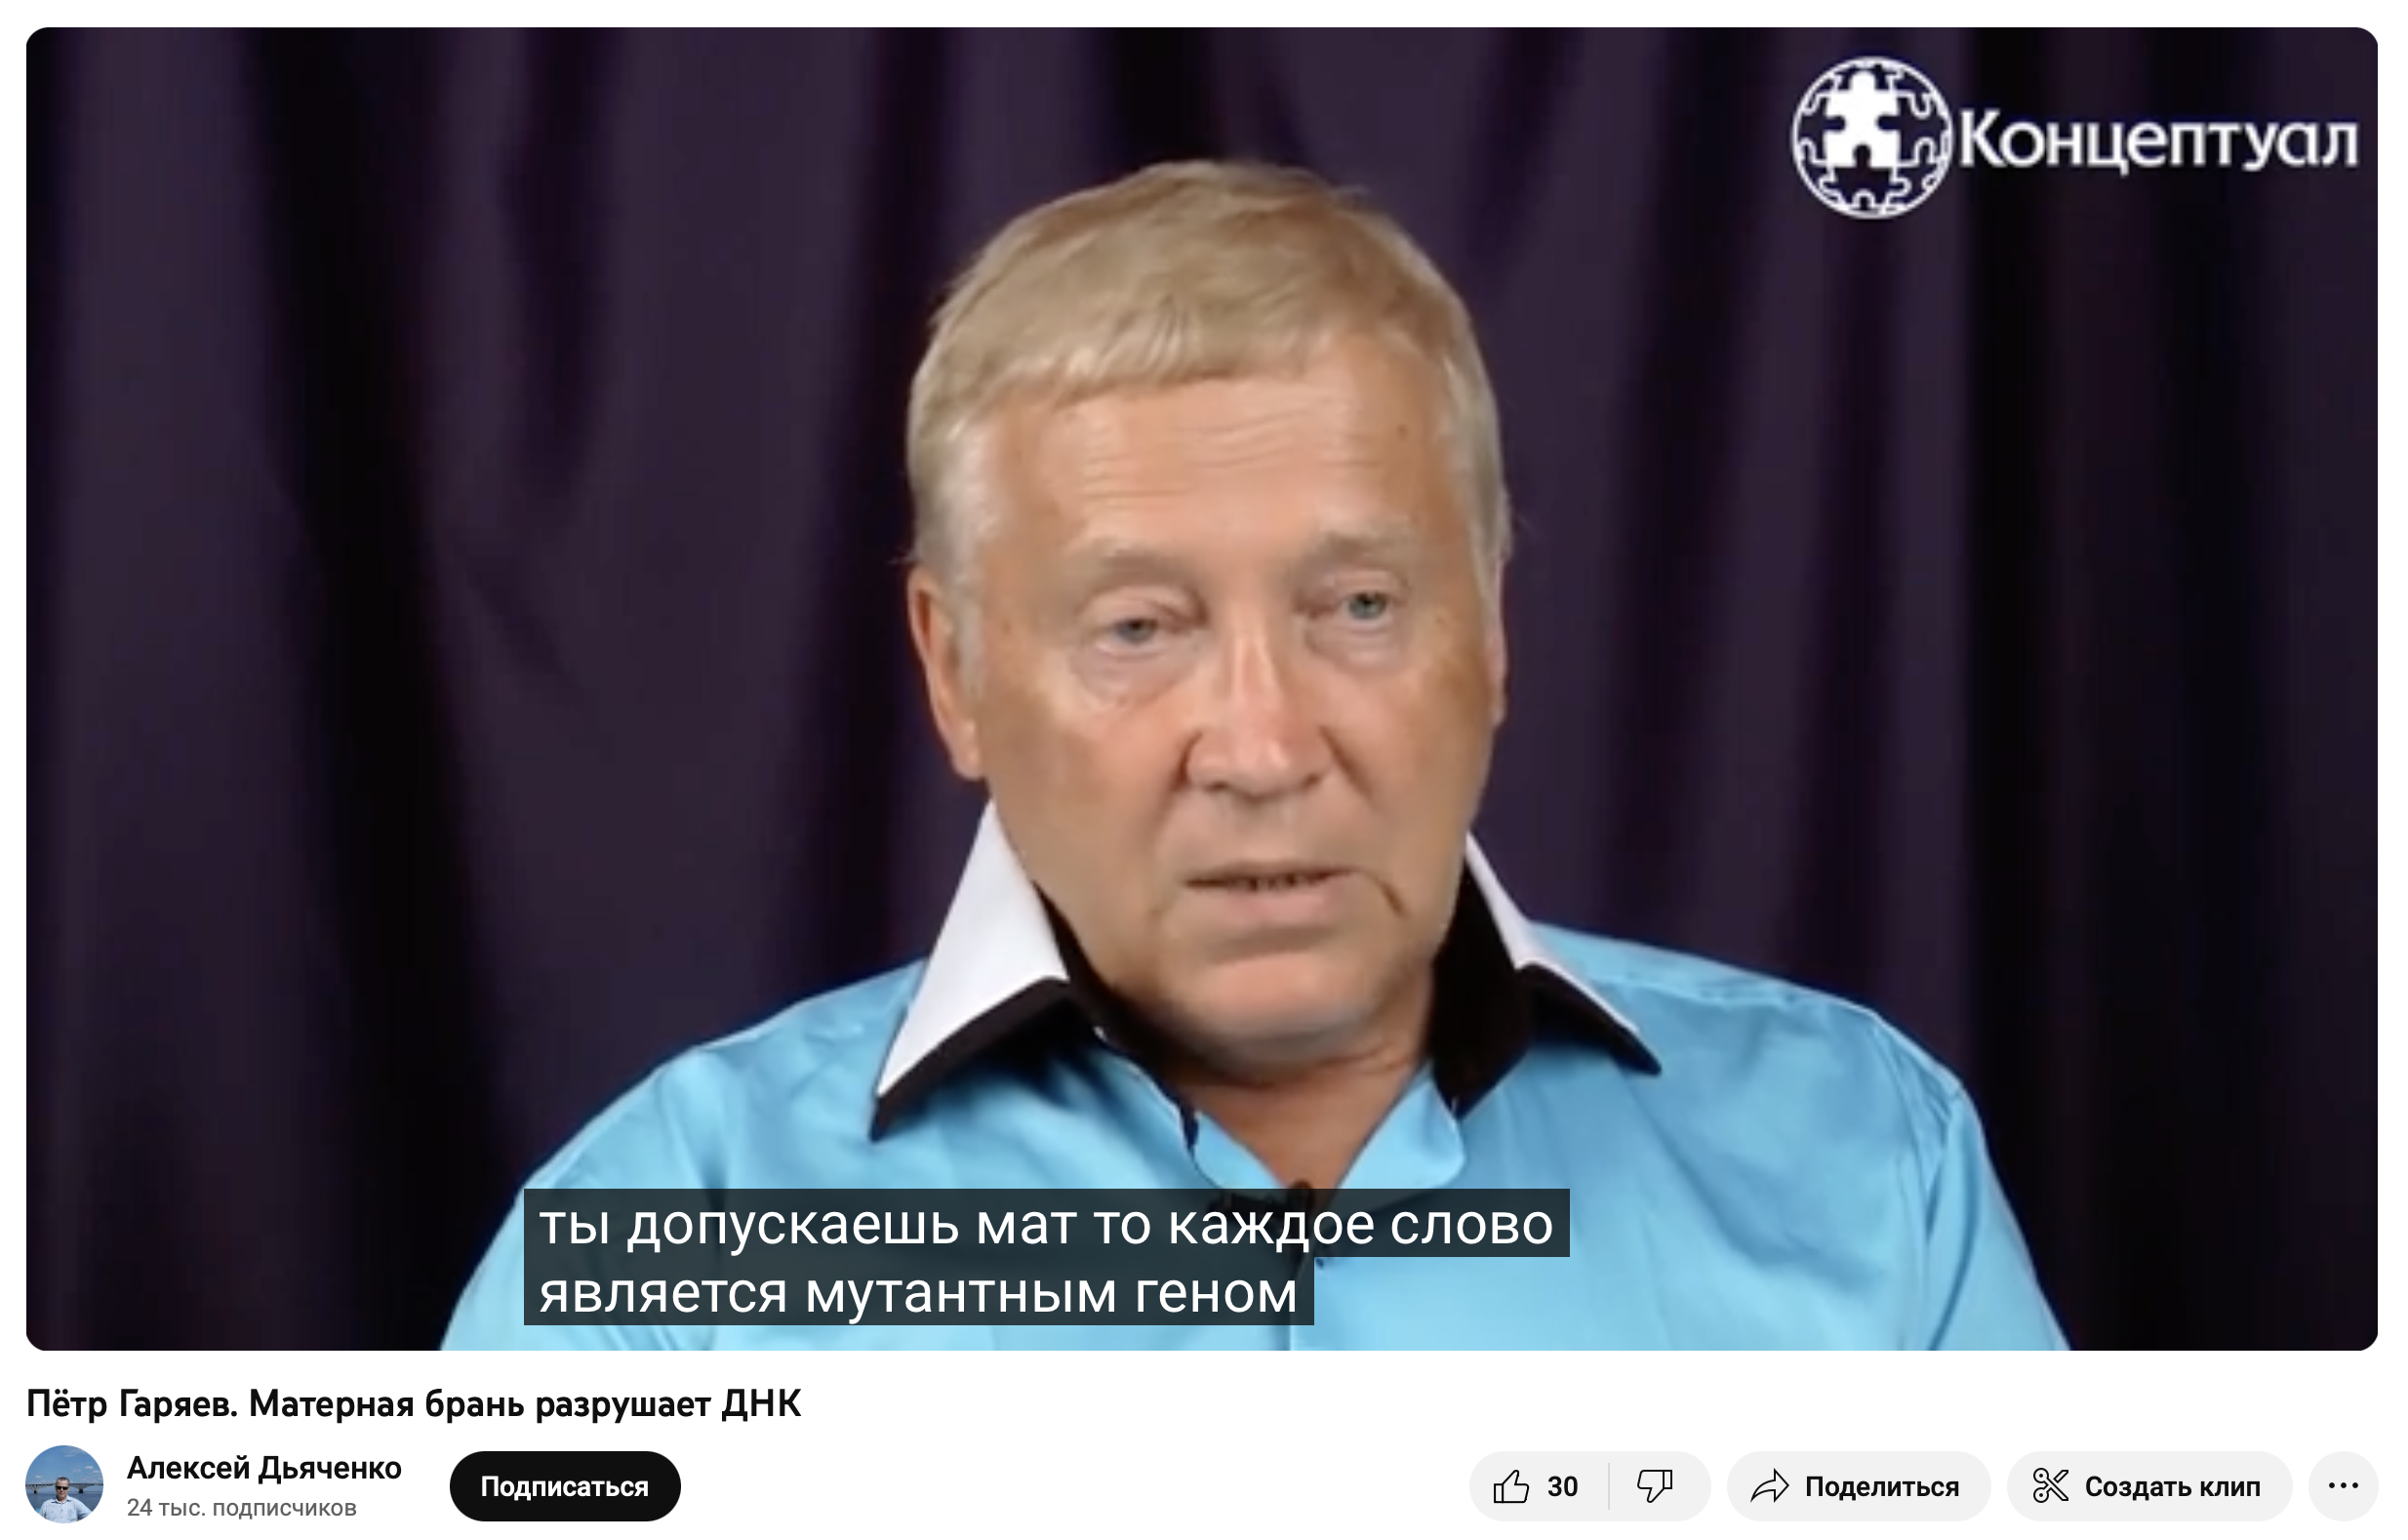 Пётр Гаряев Матерная брань разрушает ДНК